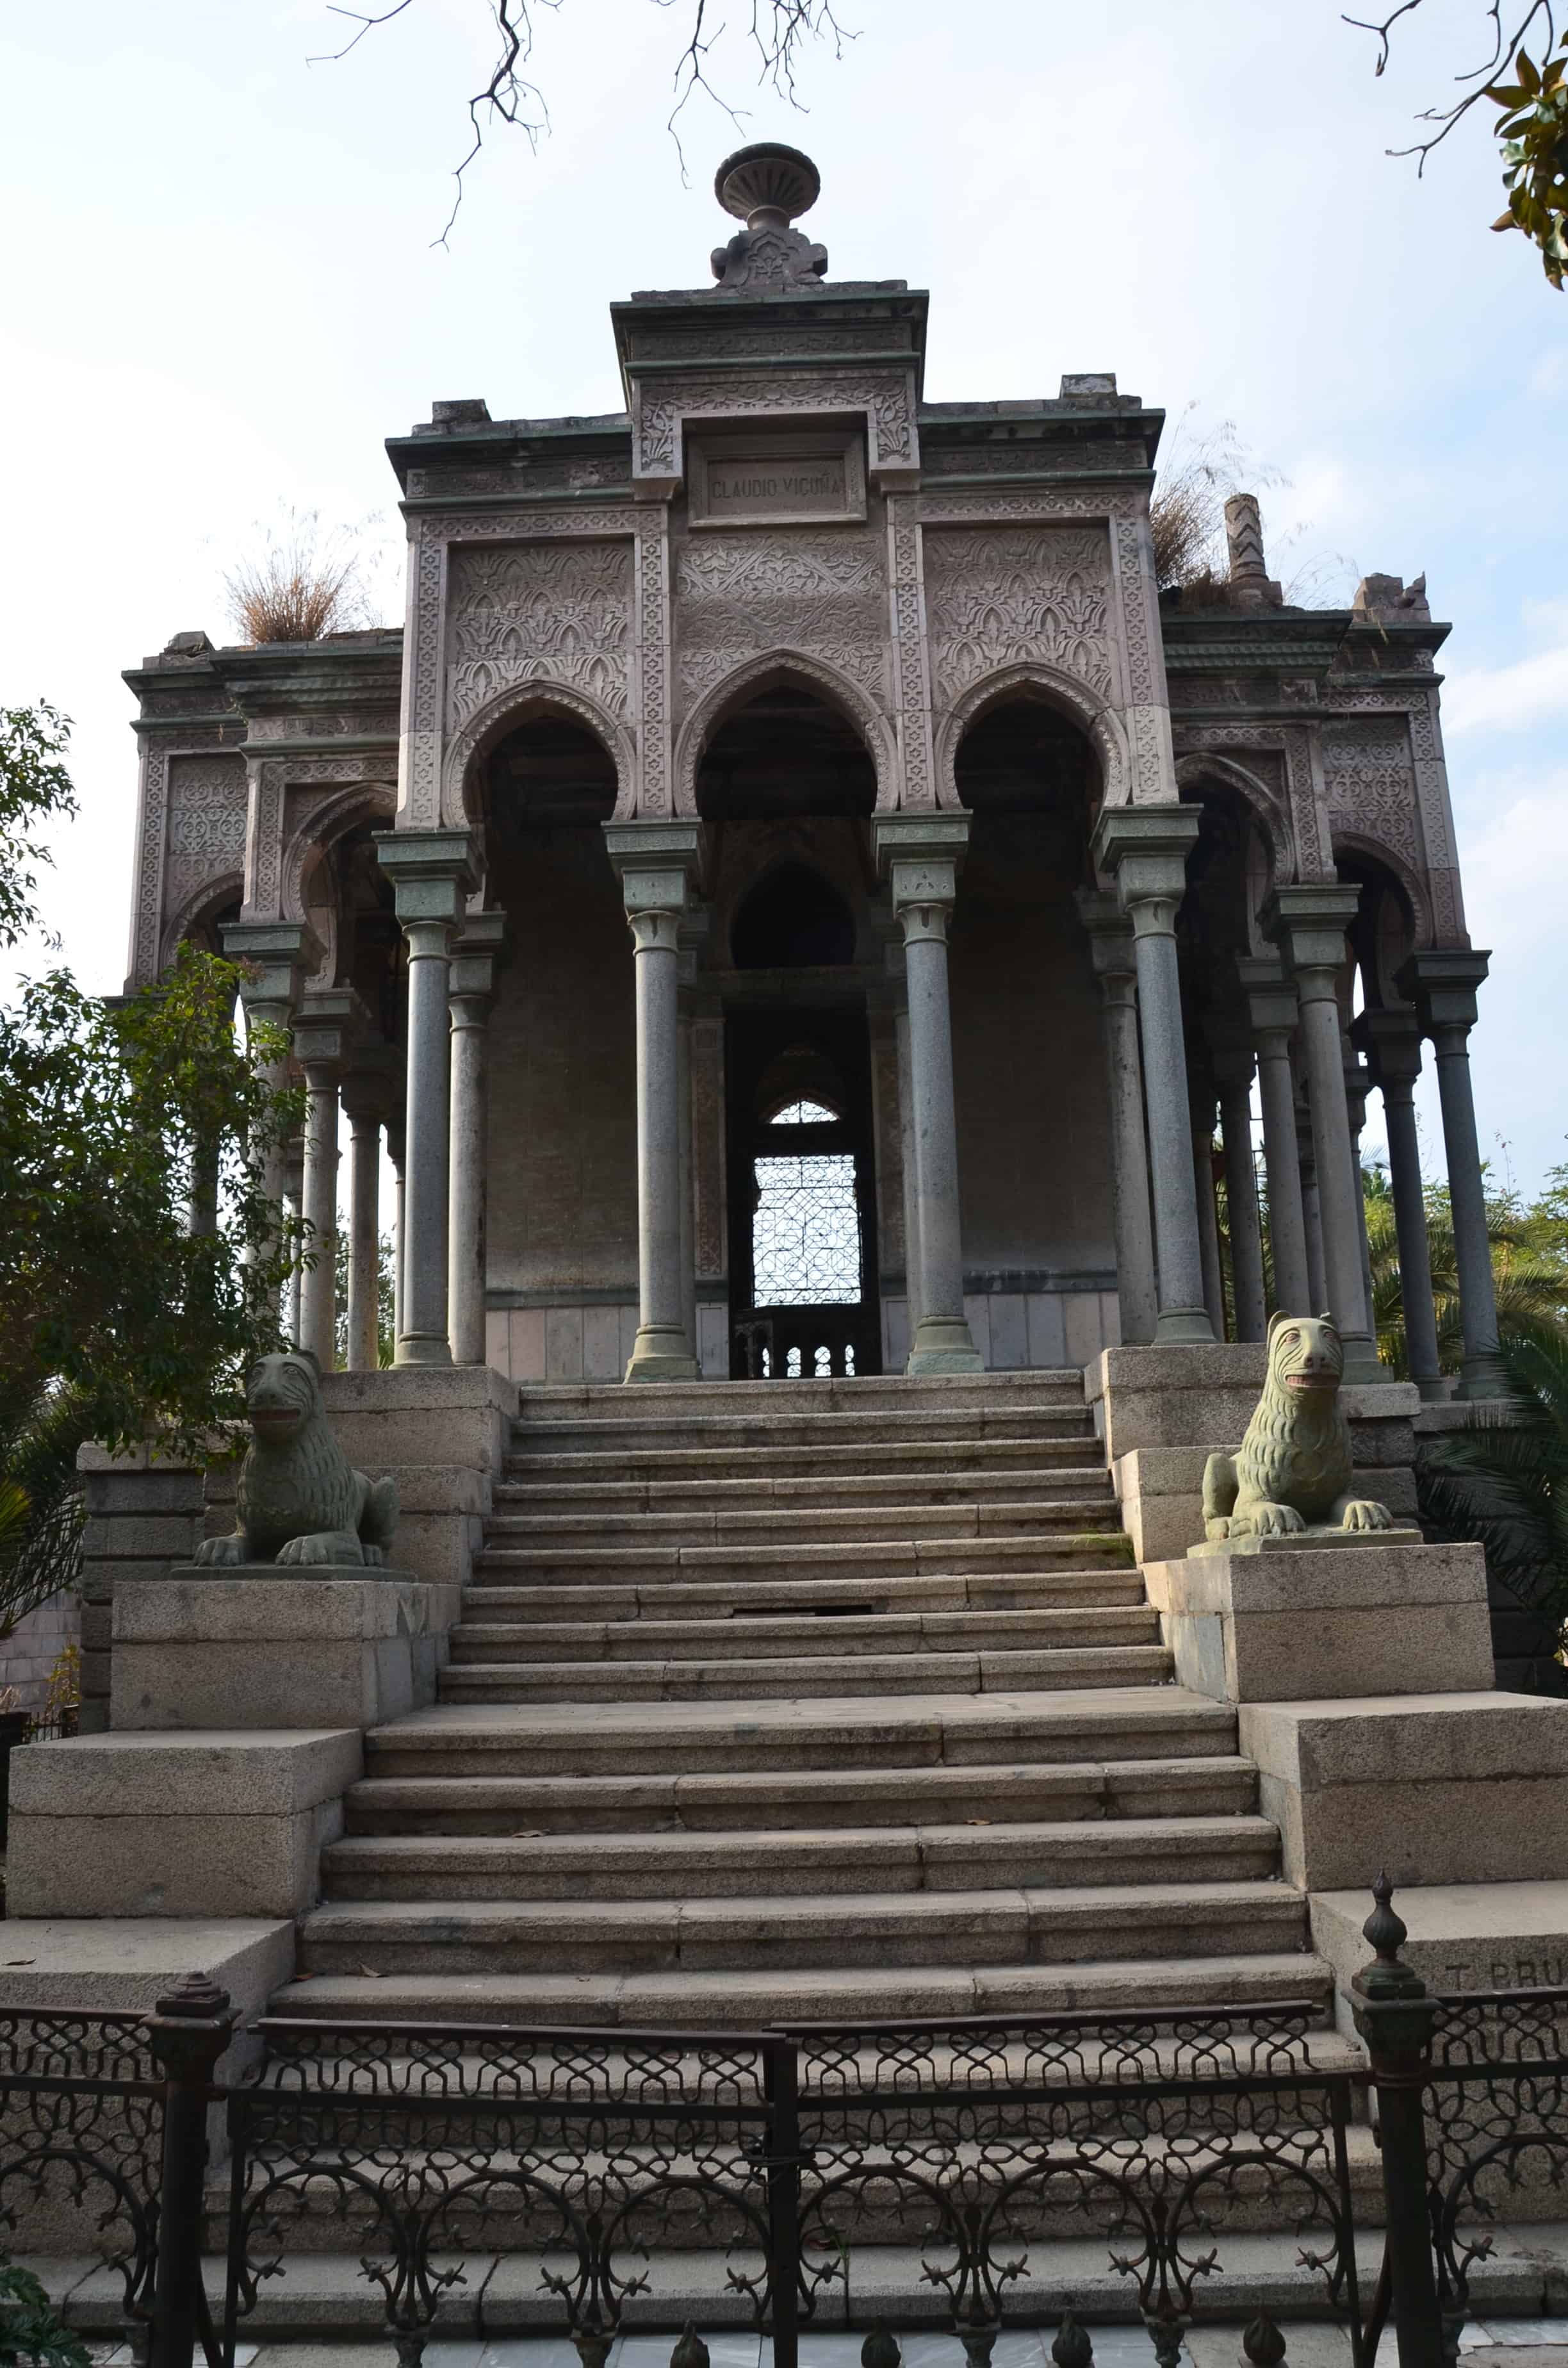 Moorish palace tomb at Cementerio General in Santiago de Chile